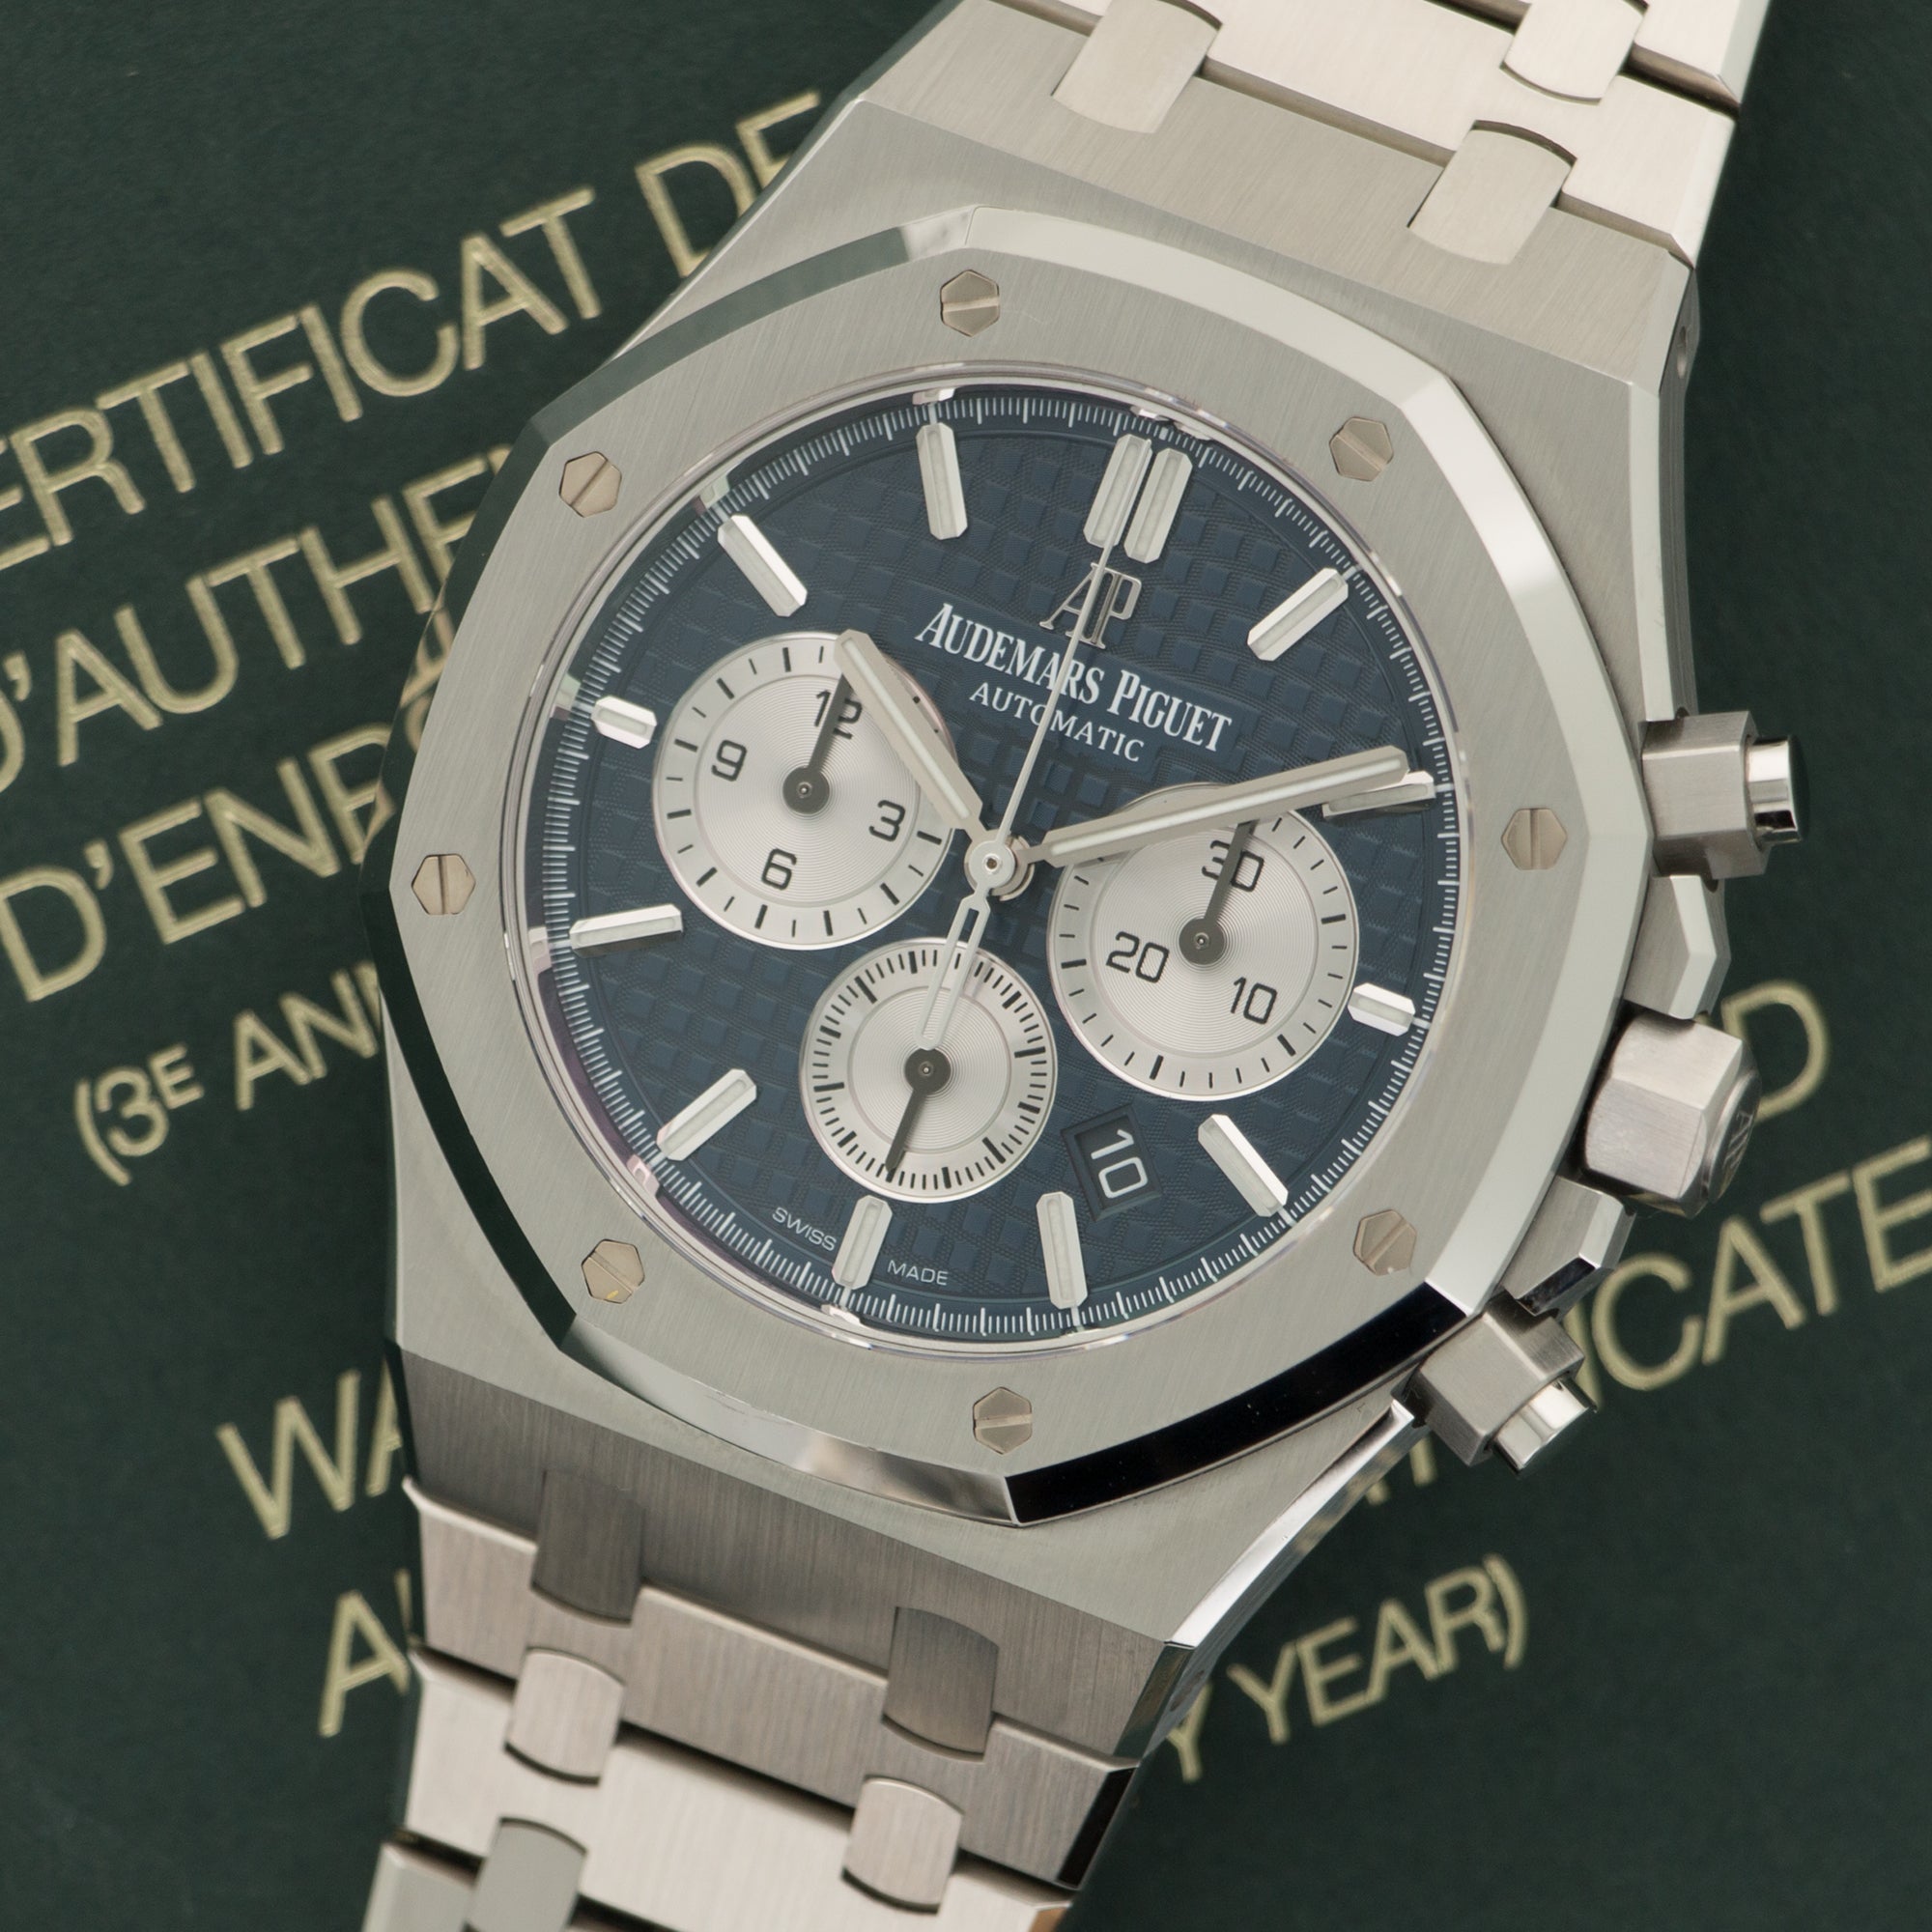 Audemars Piguet - Audemars Piguet Royal Oak Chronograph Watch Ref. 26331 - The Keystone Watches